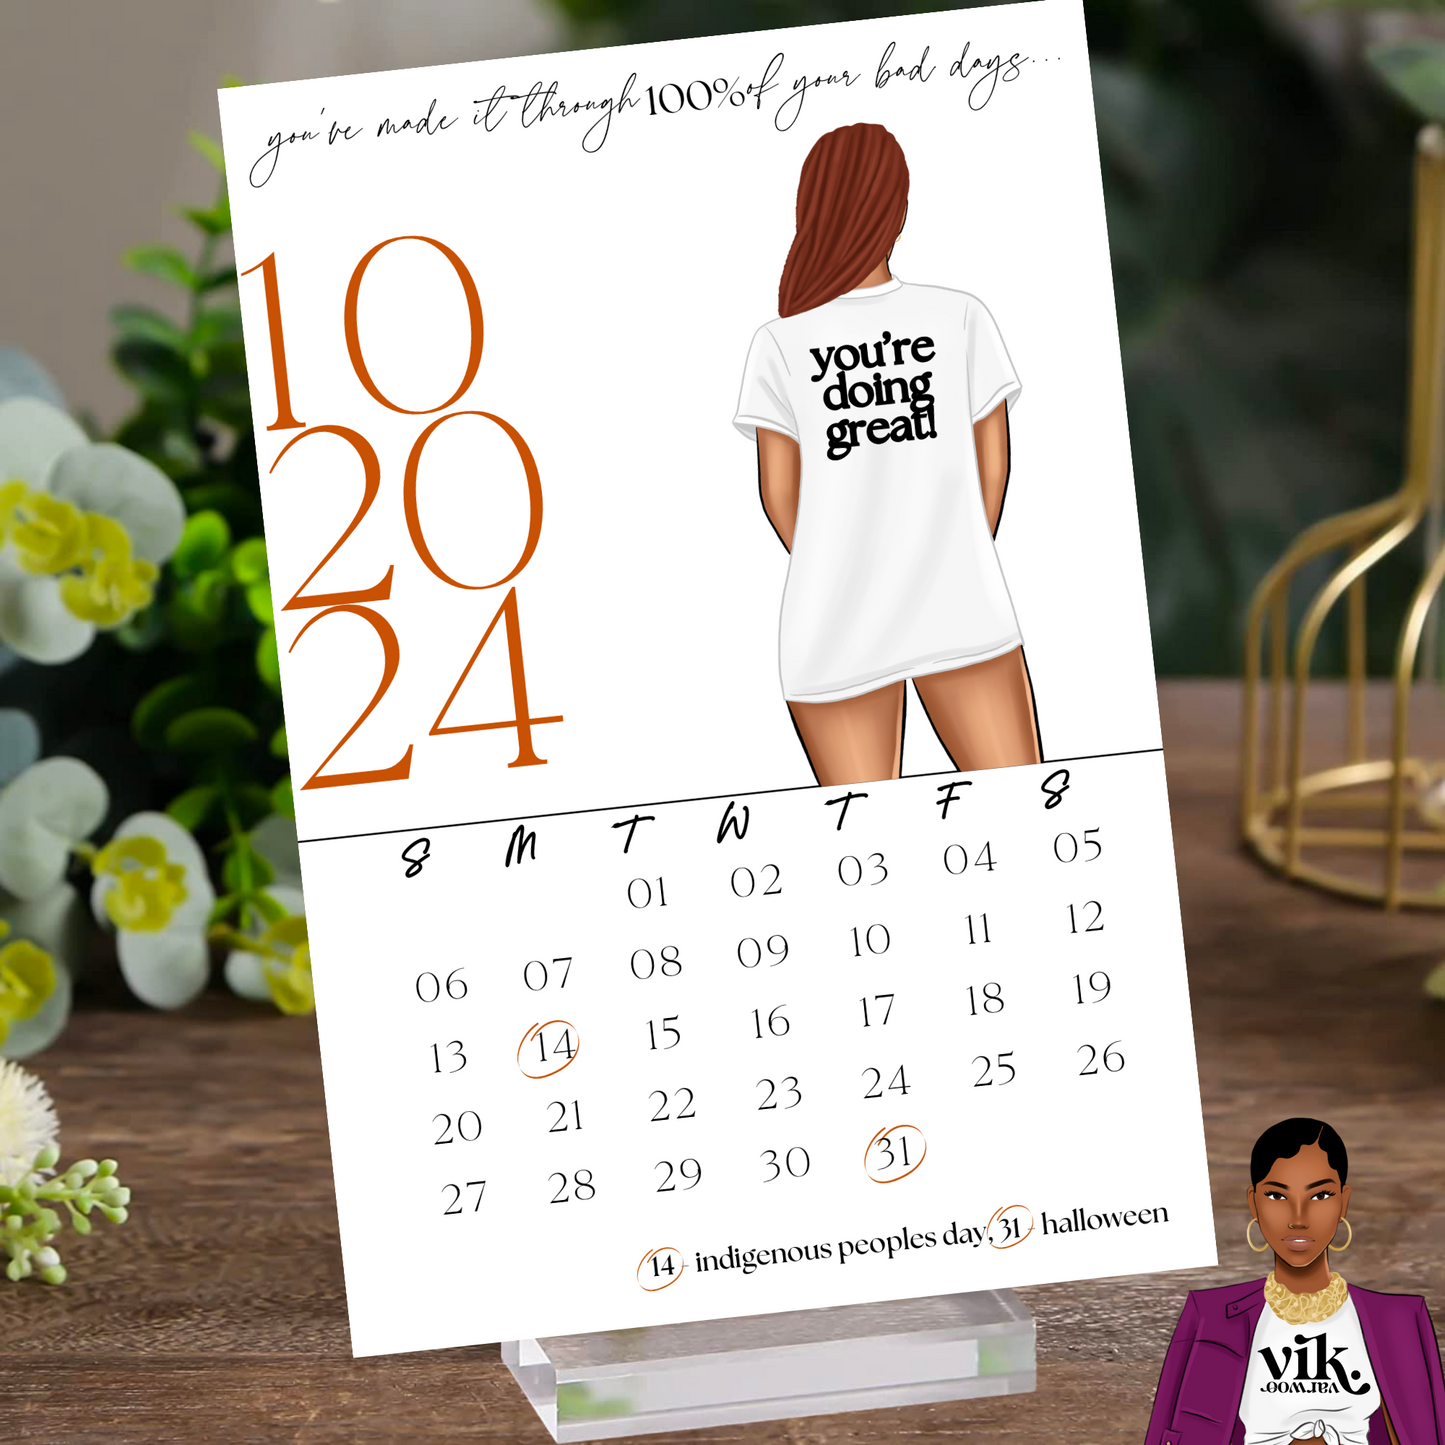 black woman calendar